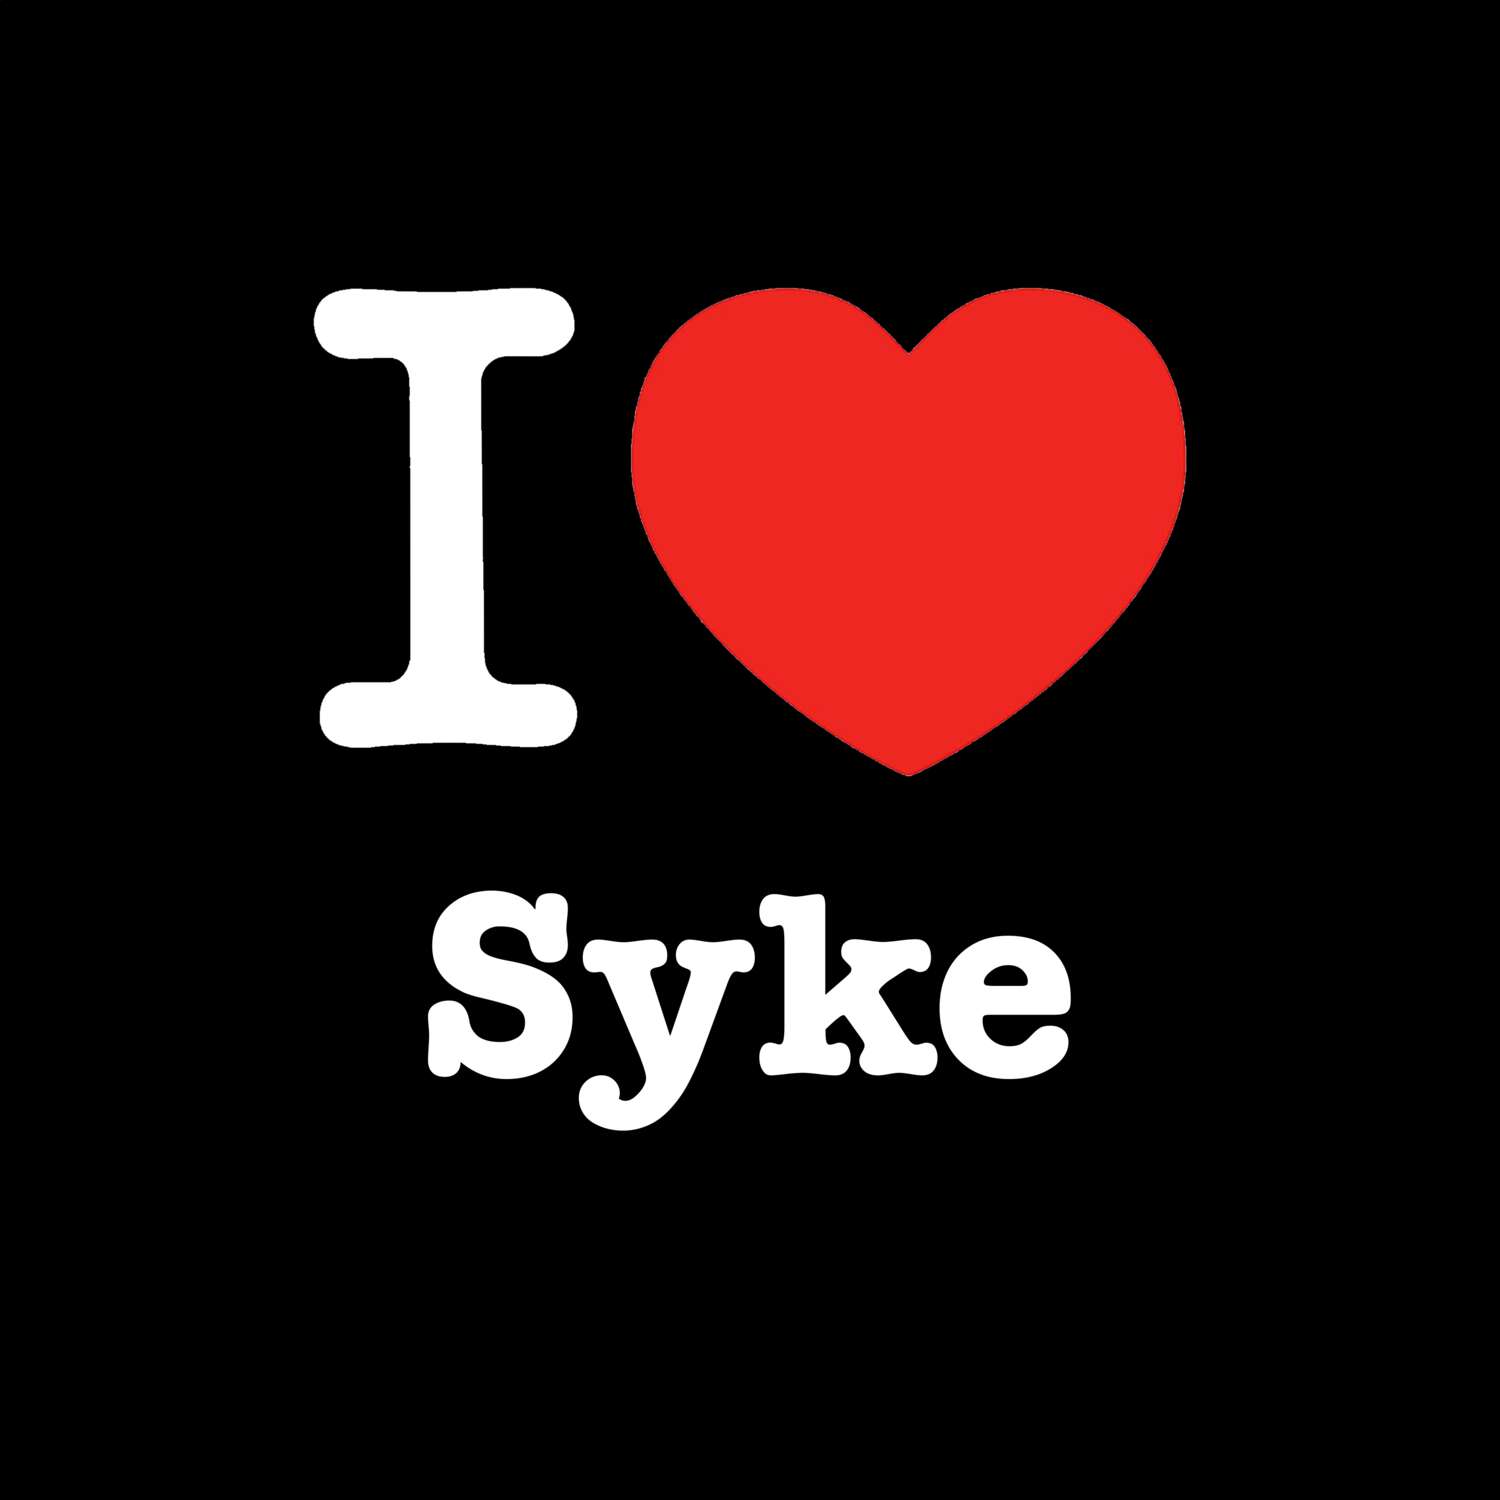 Syke T-Shirt »I love«